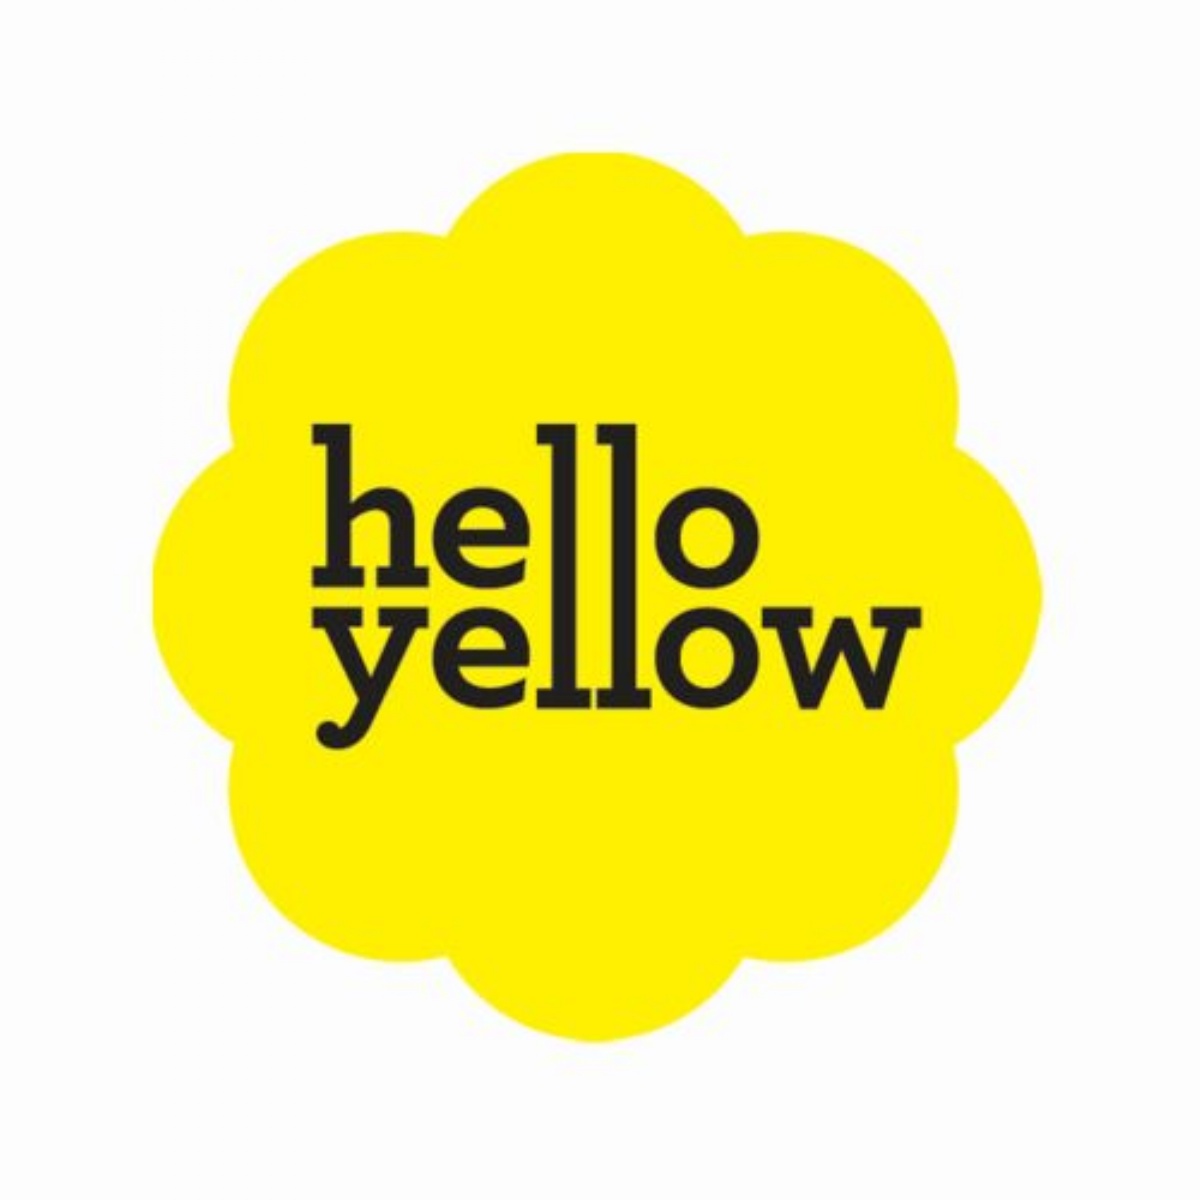 Хеллоу желтый. Capella hello Yellow. WD Yellow. Wednesday на жёлтом ава. Зеллоу хеллру клип женщмны.